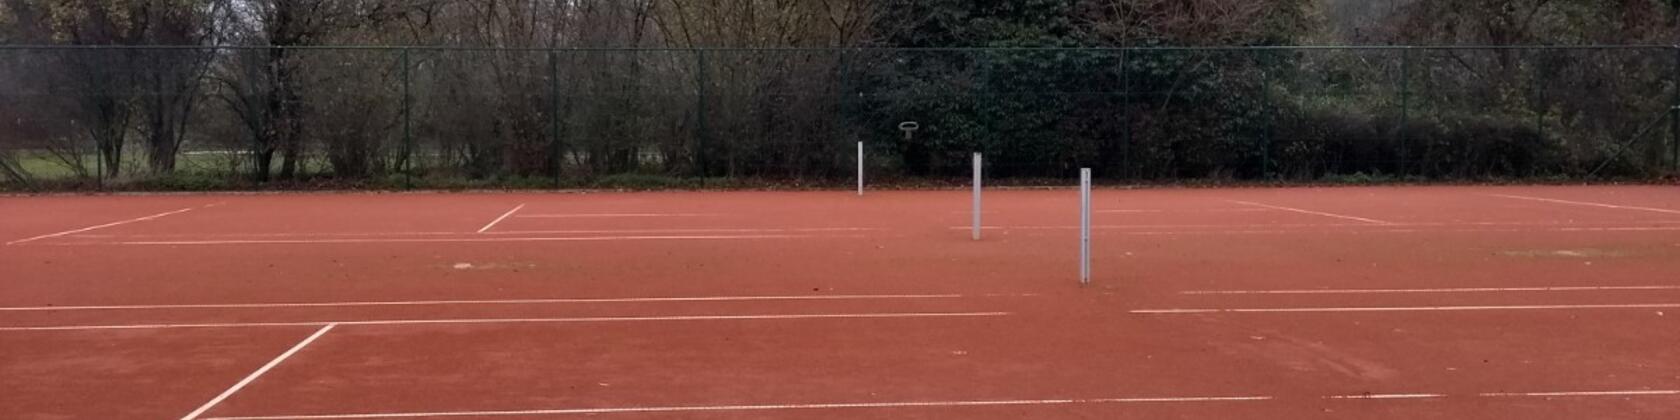 Blaarmeersen outdoor tennisterreinen